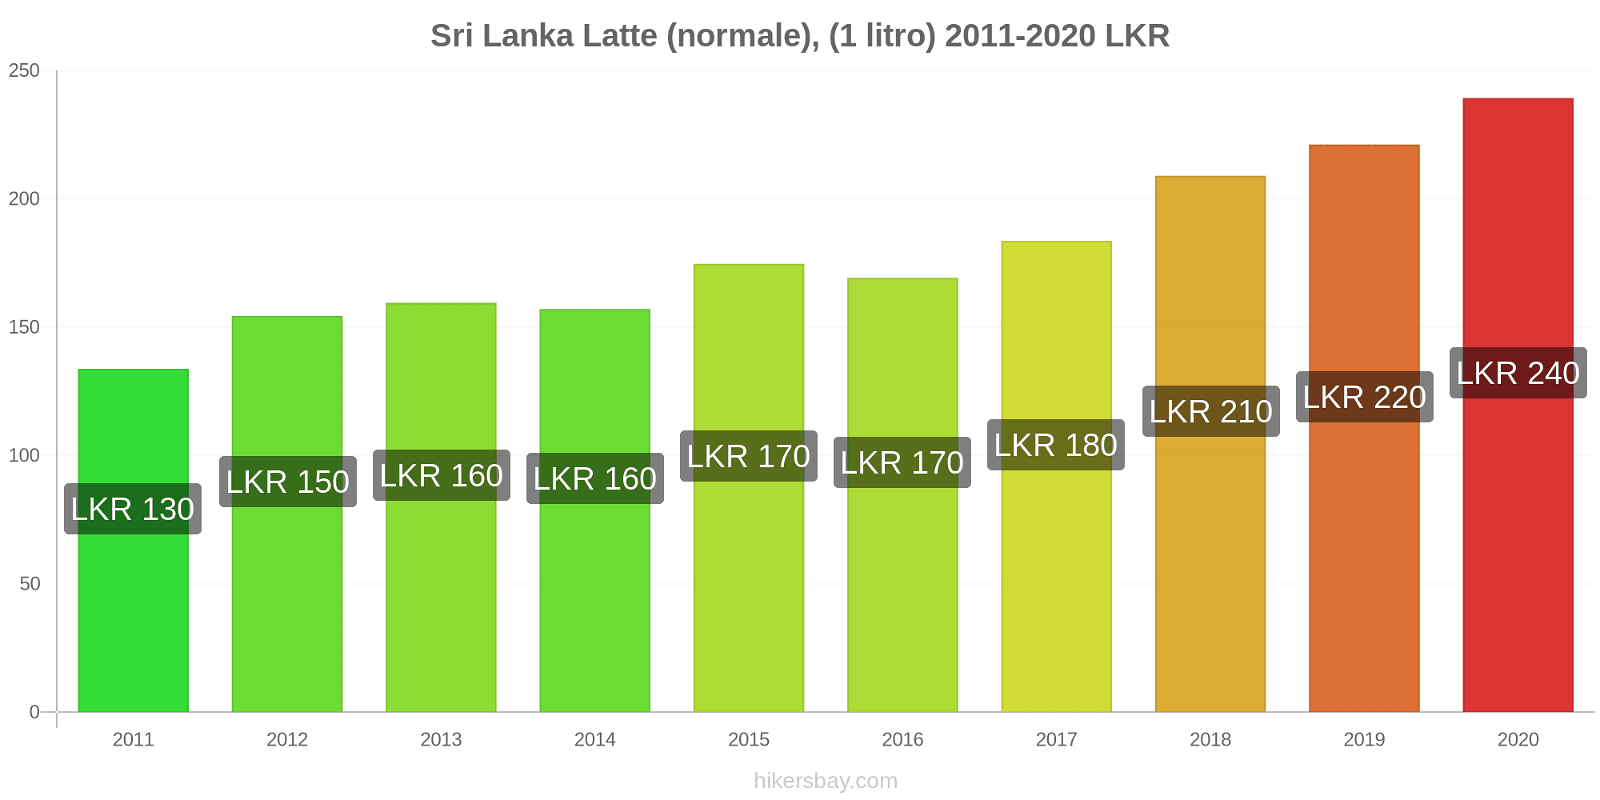 Sri Lanka variazioni di prezzo Latte (1 litro) hikersbay.com